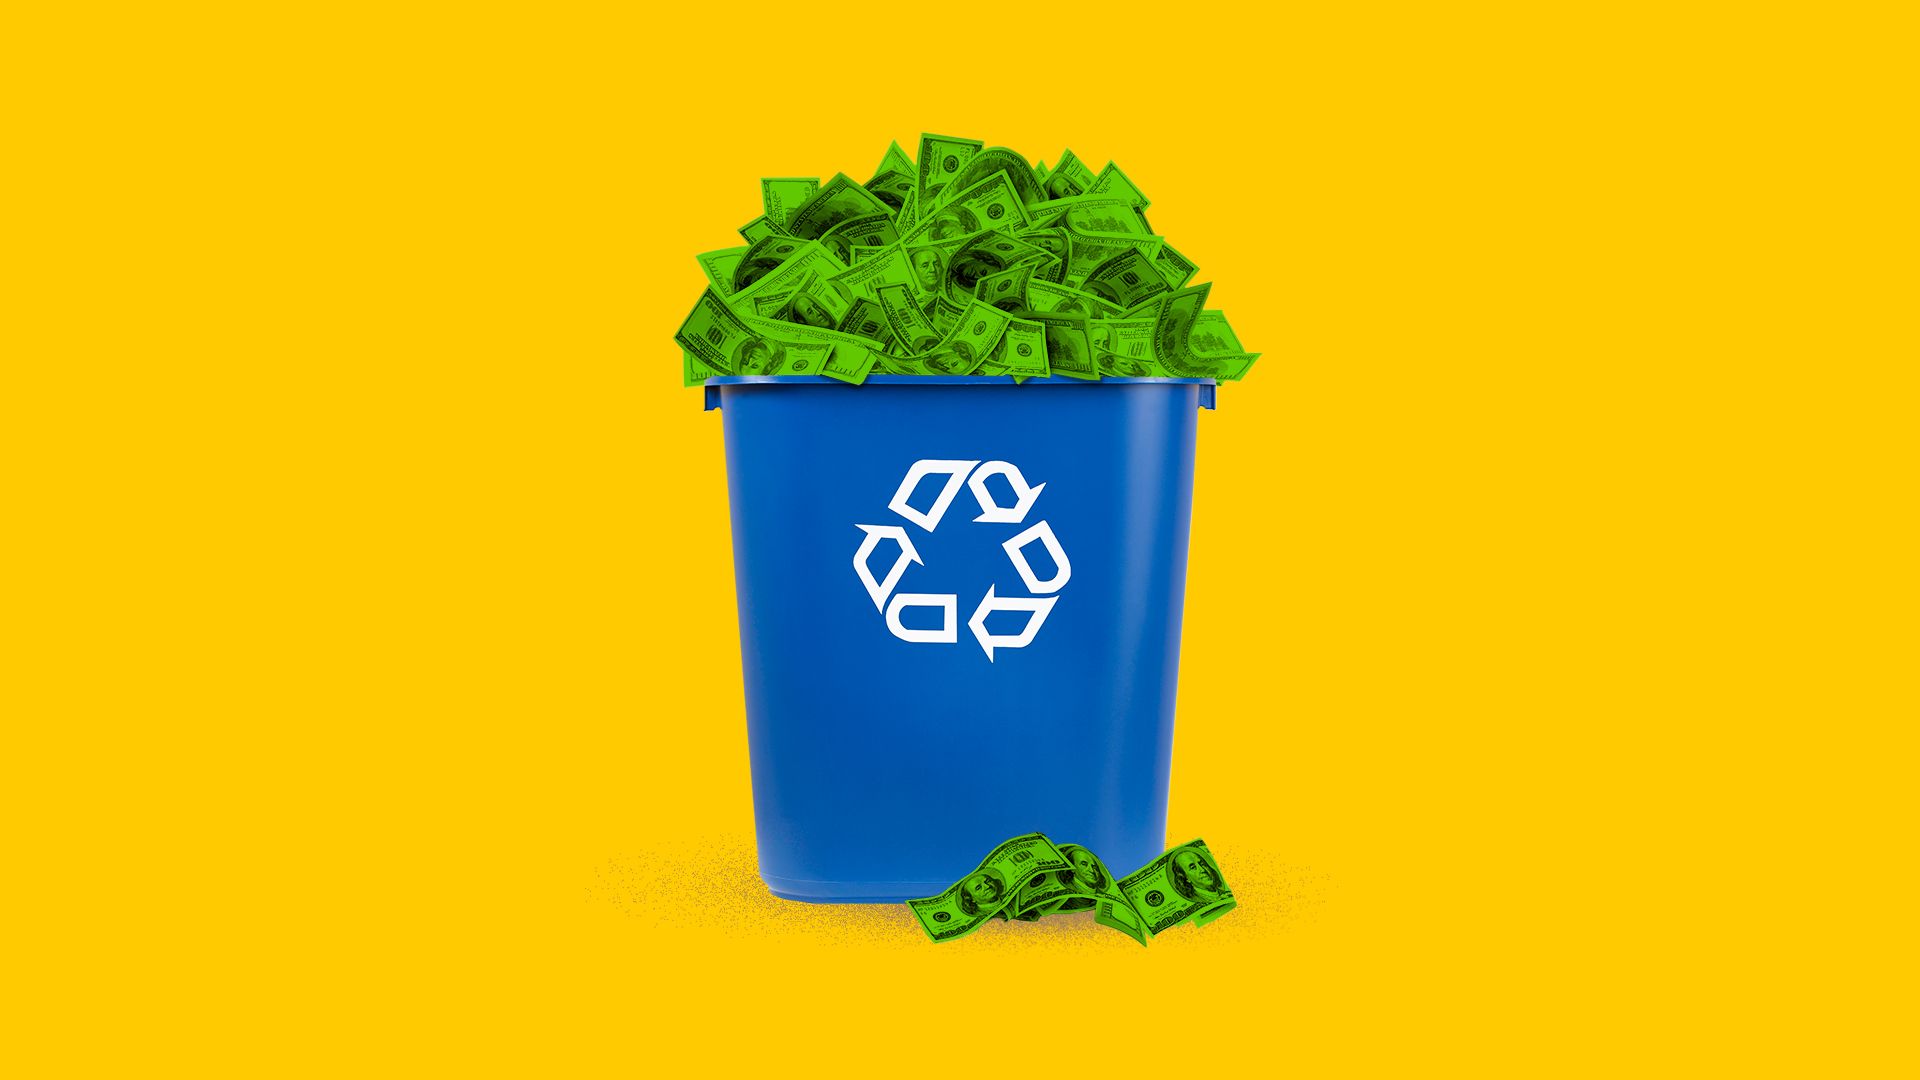 Illustration of a recycling bin full of cash bills. 